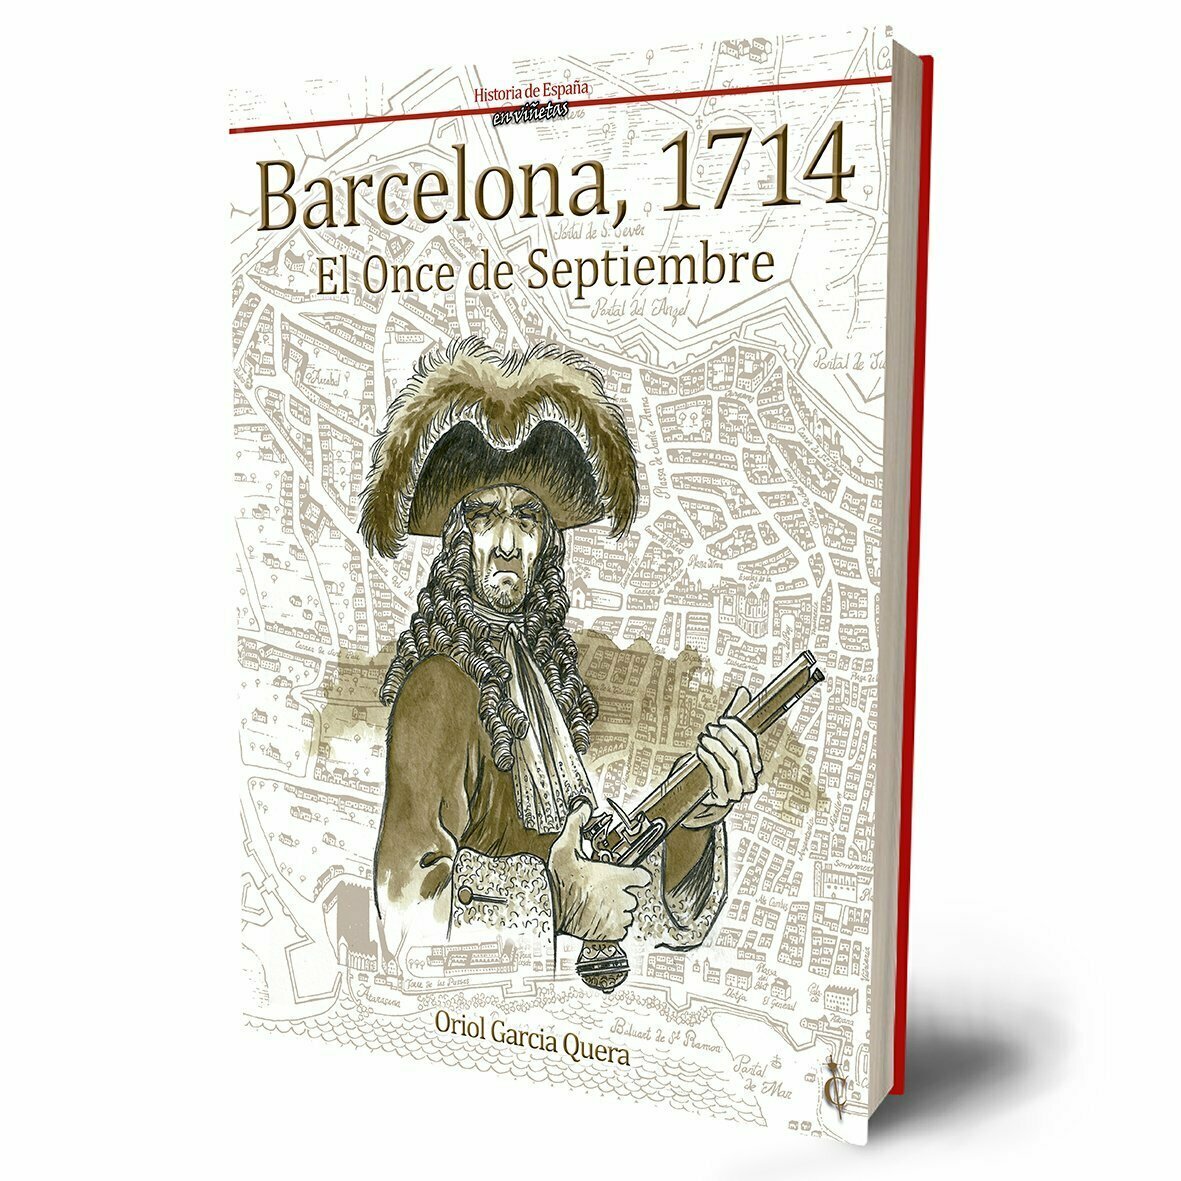 Barcelona, 1714. El Once de Septiembre.